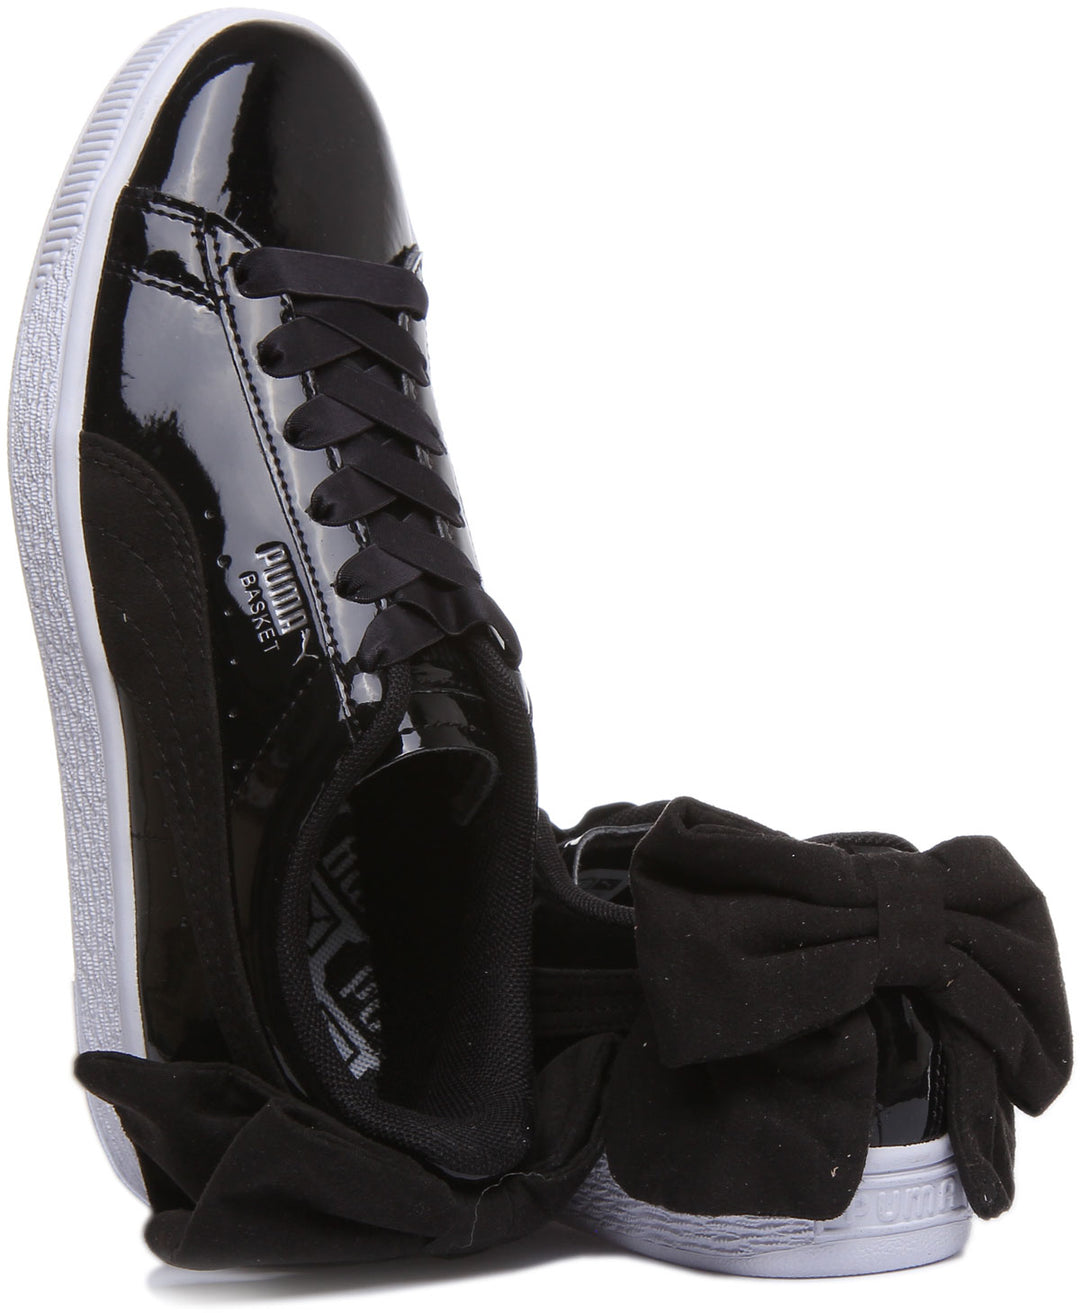 Puma Basket Bow SB Elastische Frauen Sneakers aus geschnürtem Leder schwarzem Lack